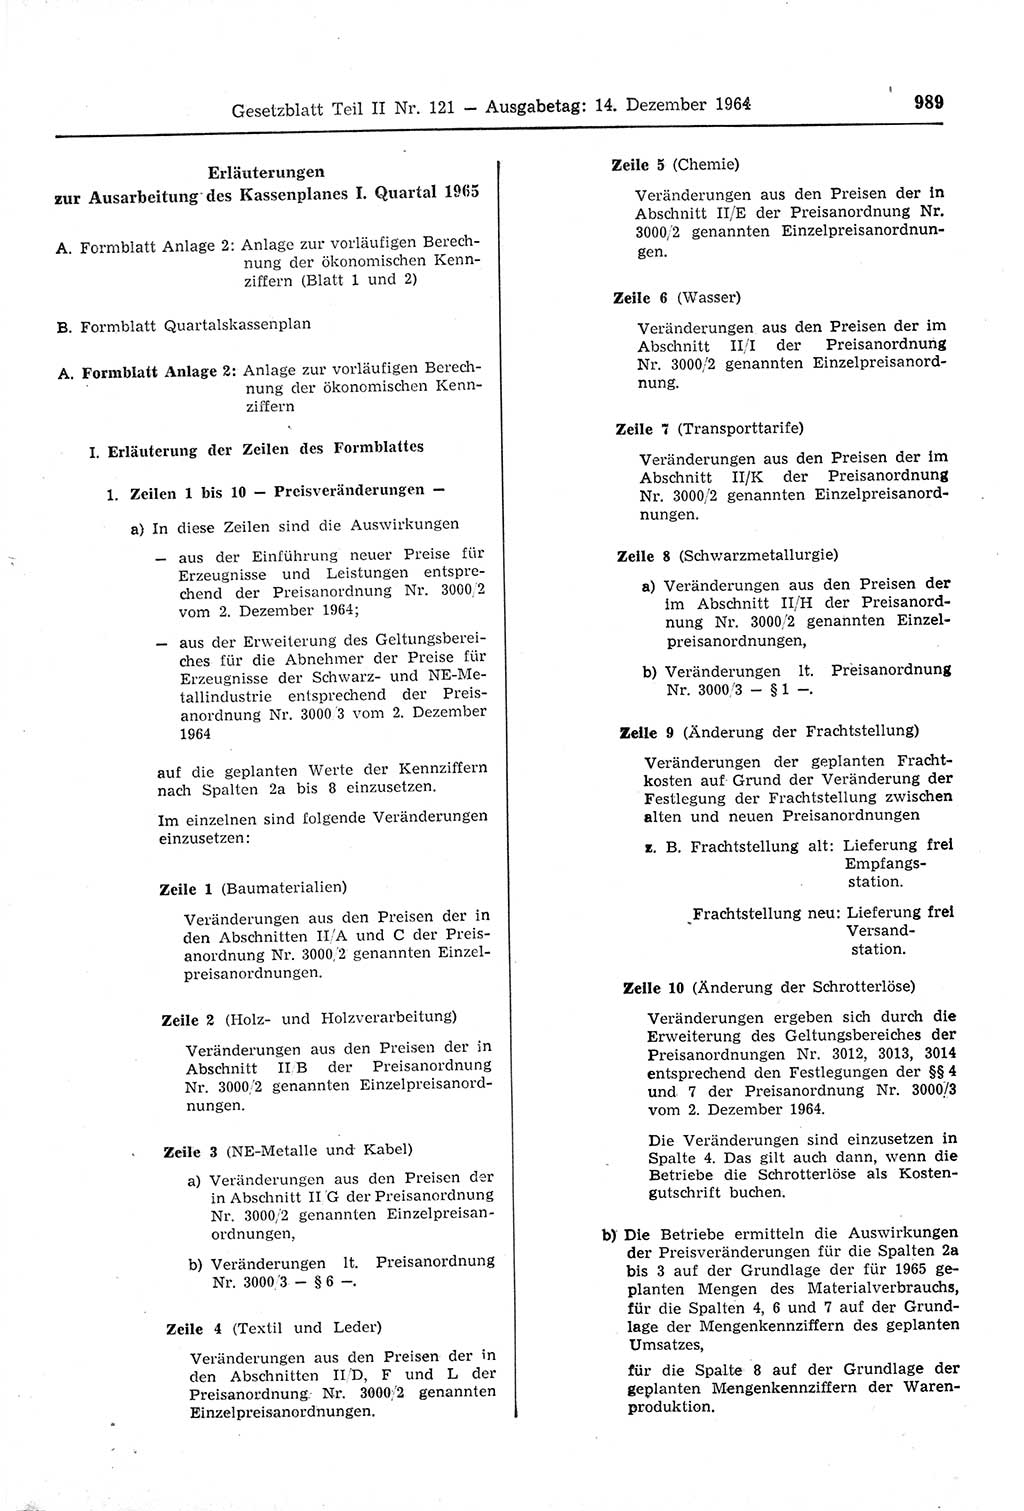 Gesetzblatt (GBl.) der Deutschen Demokratischen Republik (DDR) Teil ⅠⅠ 1964, Seite 989 (GBl. DDR ⅠⅠ 1964, S. 989)